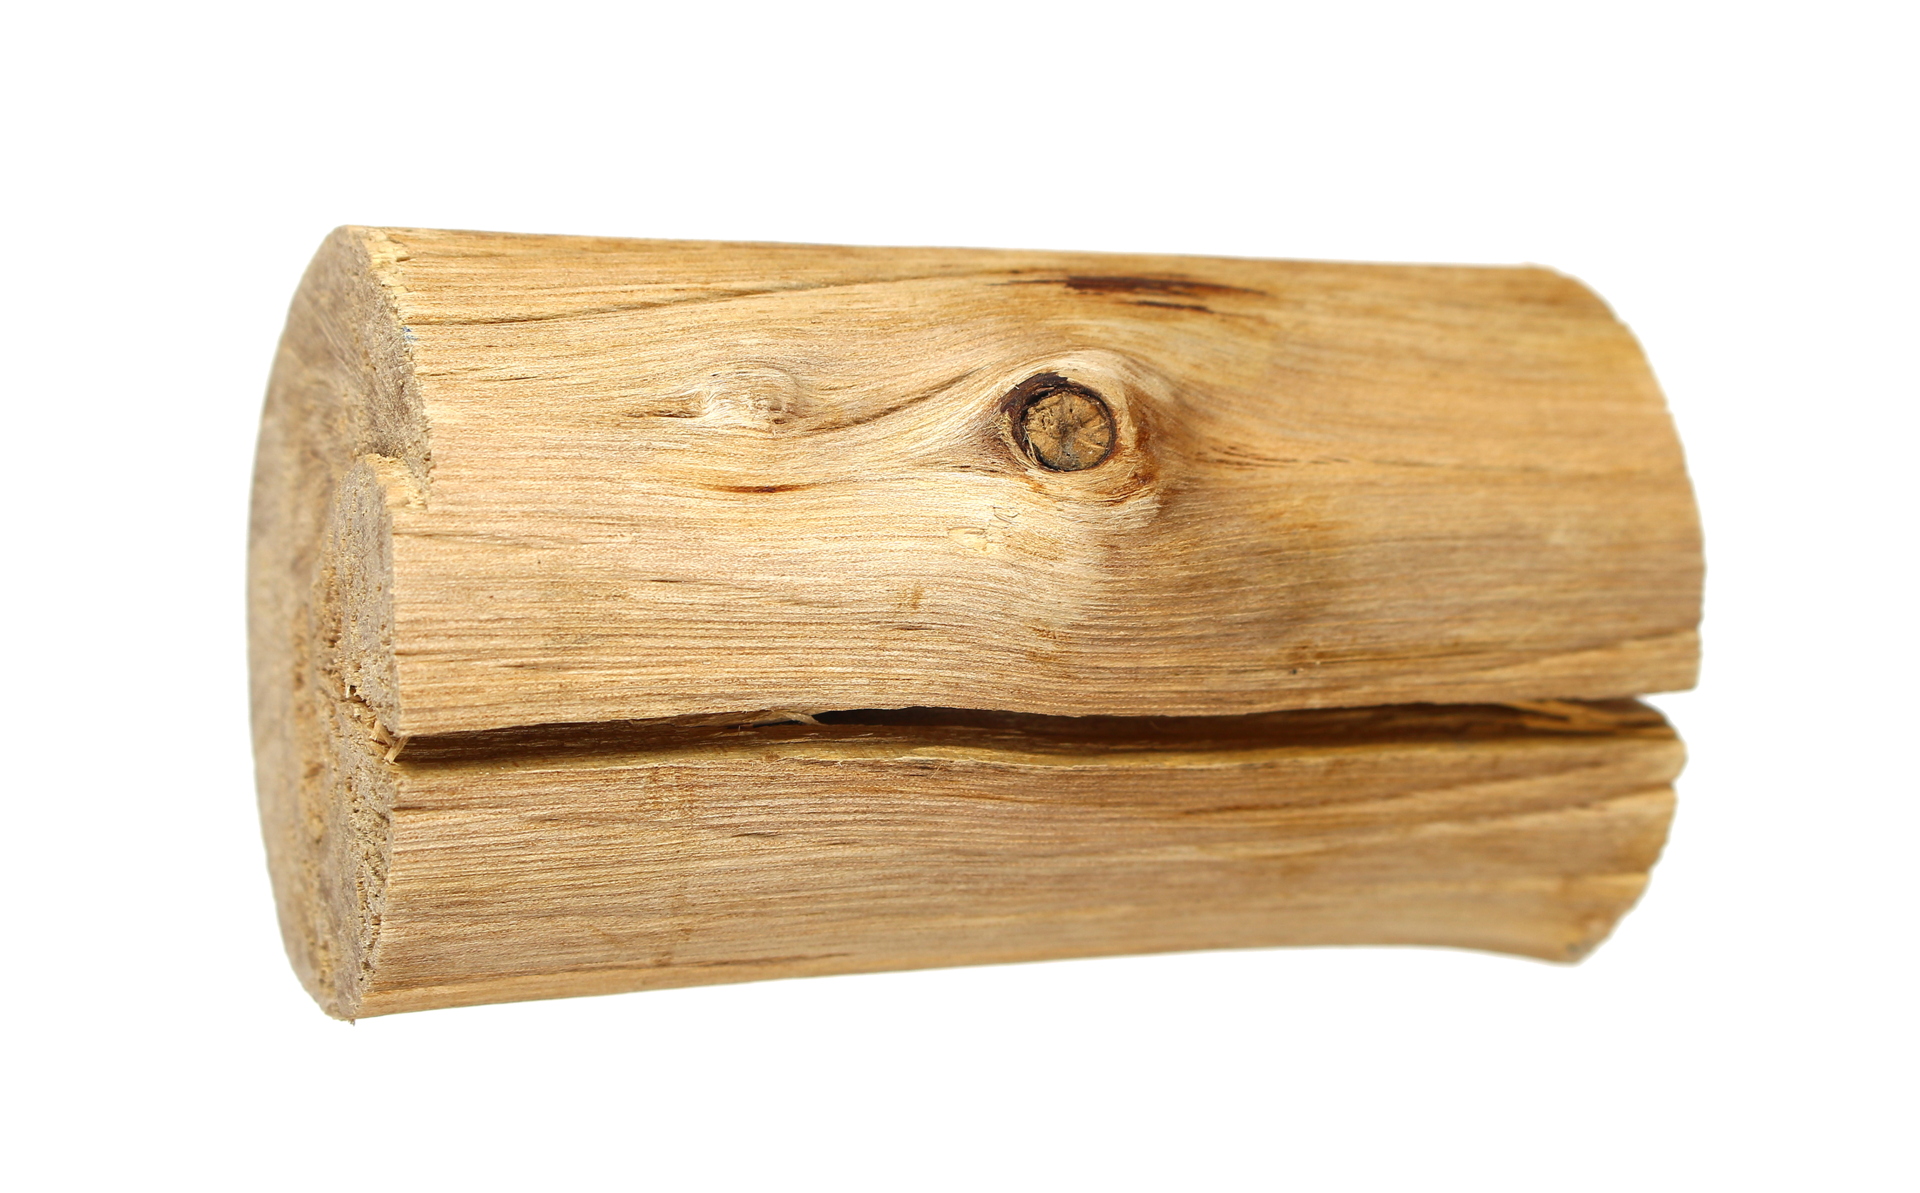 Hãy thưởng thức cây gỗ rực rỡ trên nền n逵n trong suốt độc đáo. Bộ sưu tập hình ảnh gỗ trên nền trong suốt sẽ khiến bạn choáng ngợp với sự tinh tế và độc đáo của chúng.